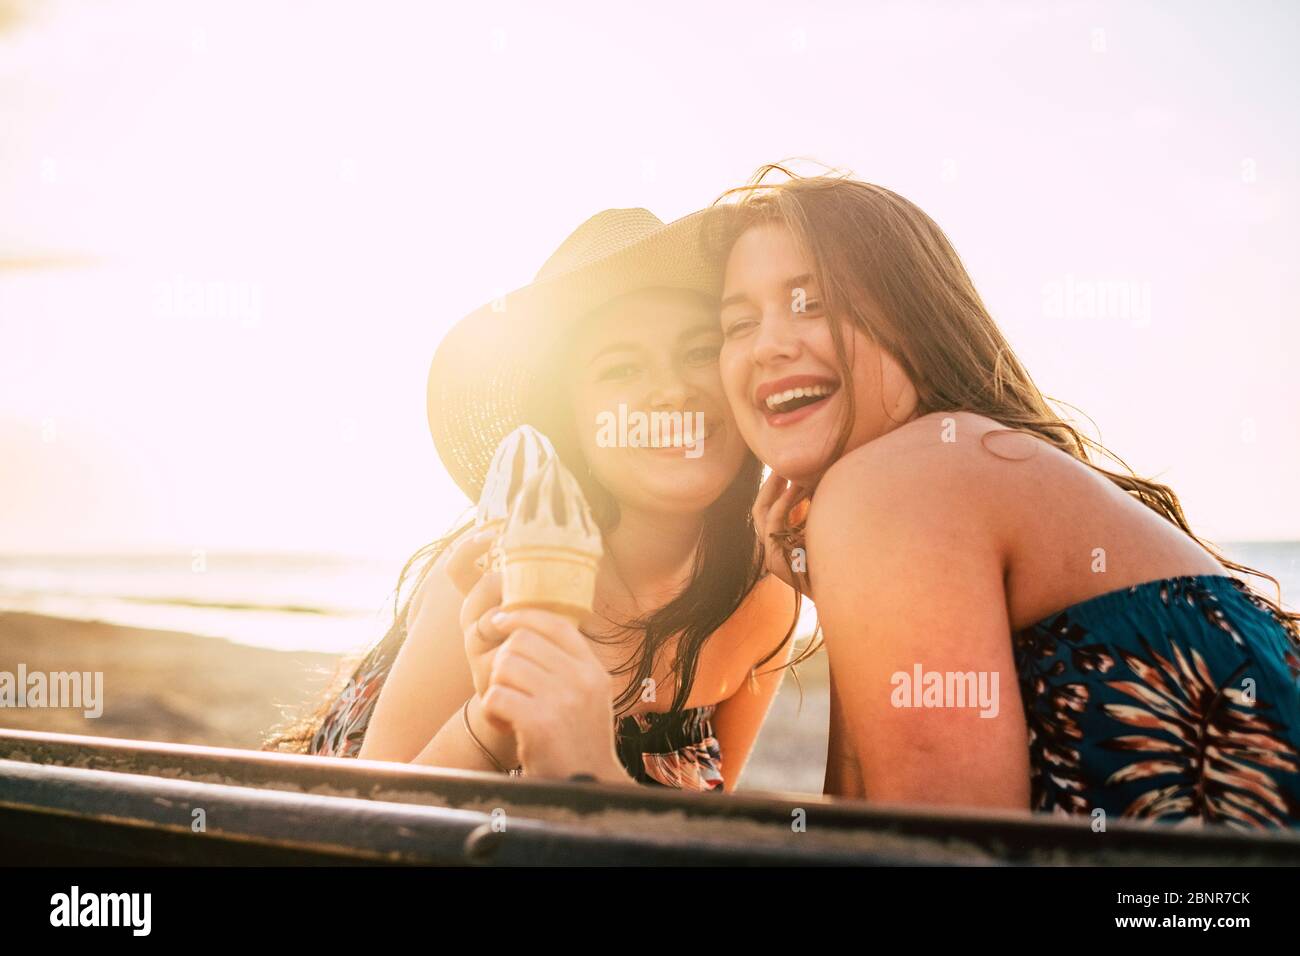 Joyeuse et le bonheur concept avec des gens joyeux couple heureux de jeunes filles caucasiennes avec la glace et l'été fond ensoleillé à la plage pendant les vacances Banque D'Images